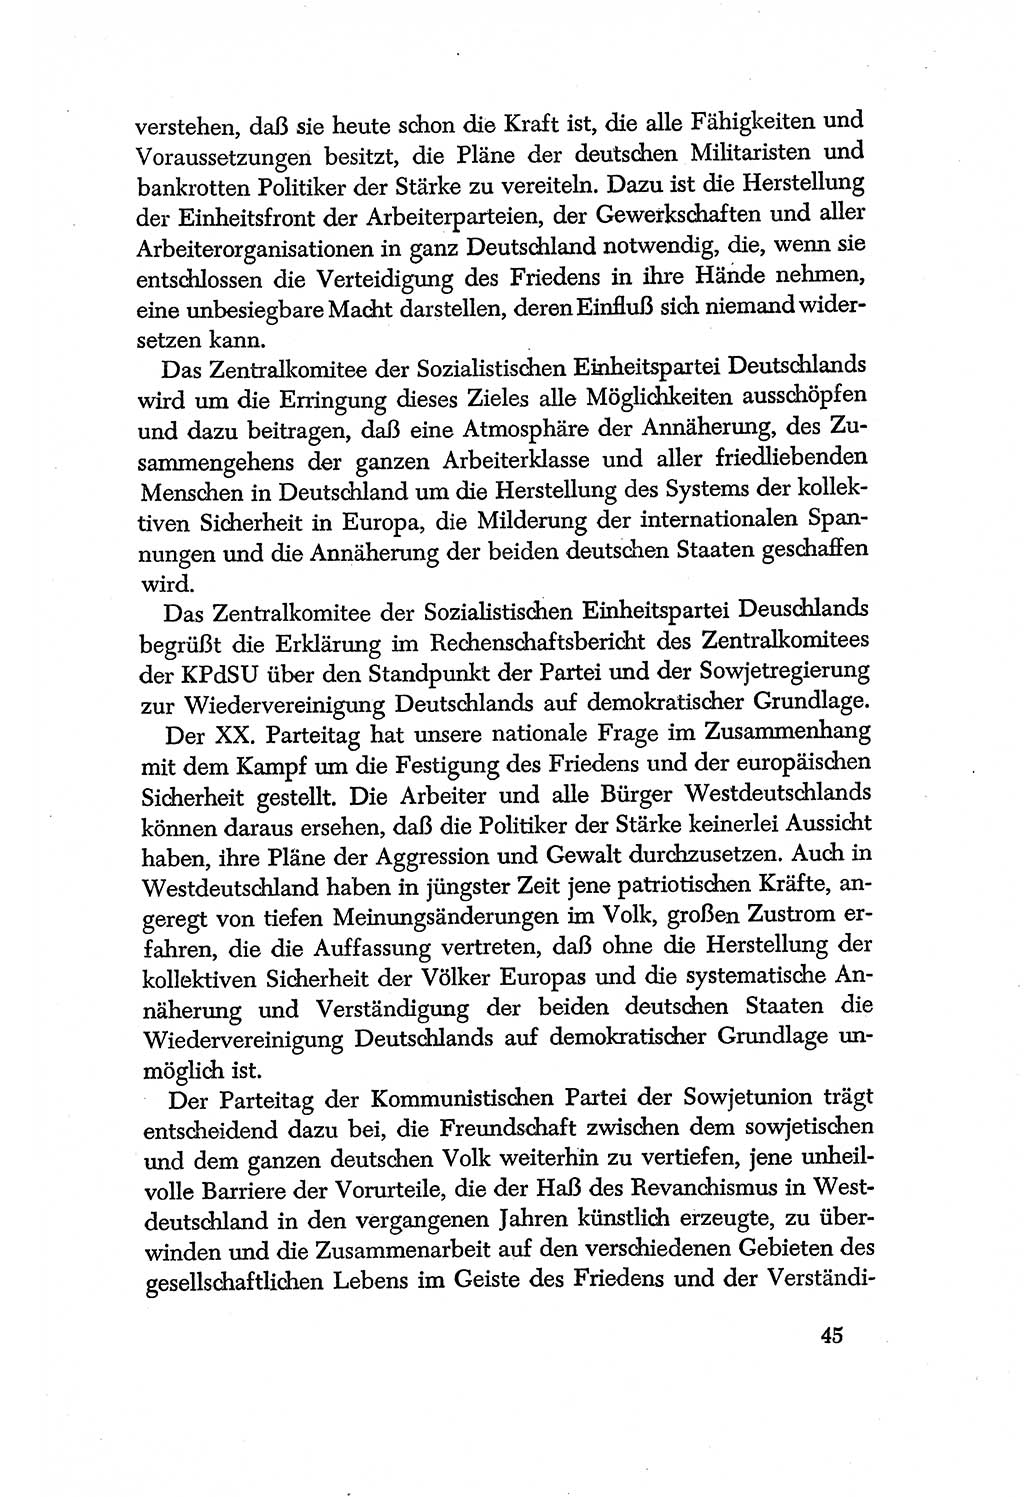 Dokumente der Sozialistischen Einheitspartei Deutschlands (SED) [Deutsche Demokratische Republik (DDR)] 1956-1957, Seite 45 (Dok. SED DDR 1956-1957, S. 45)